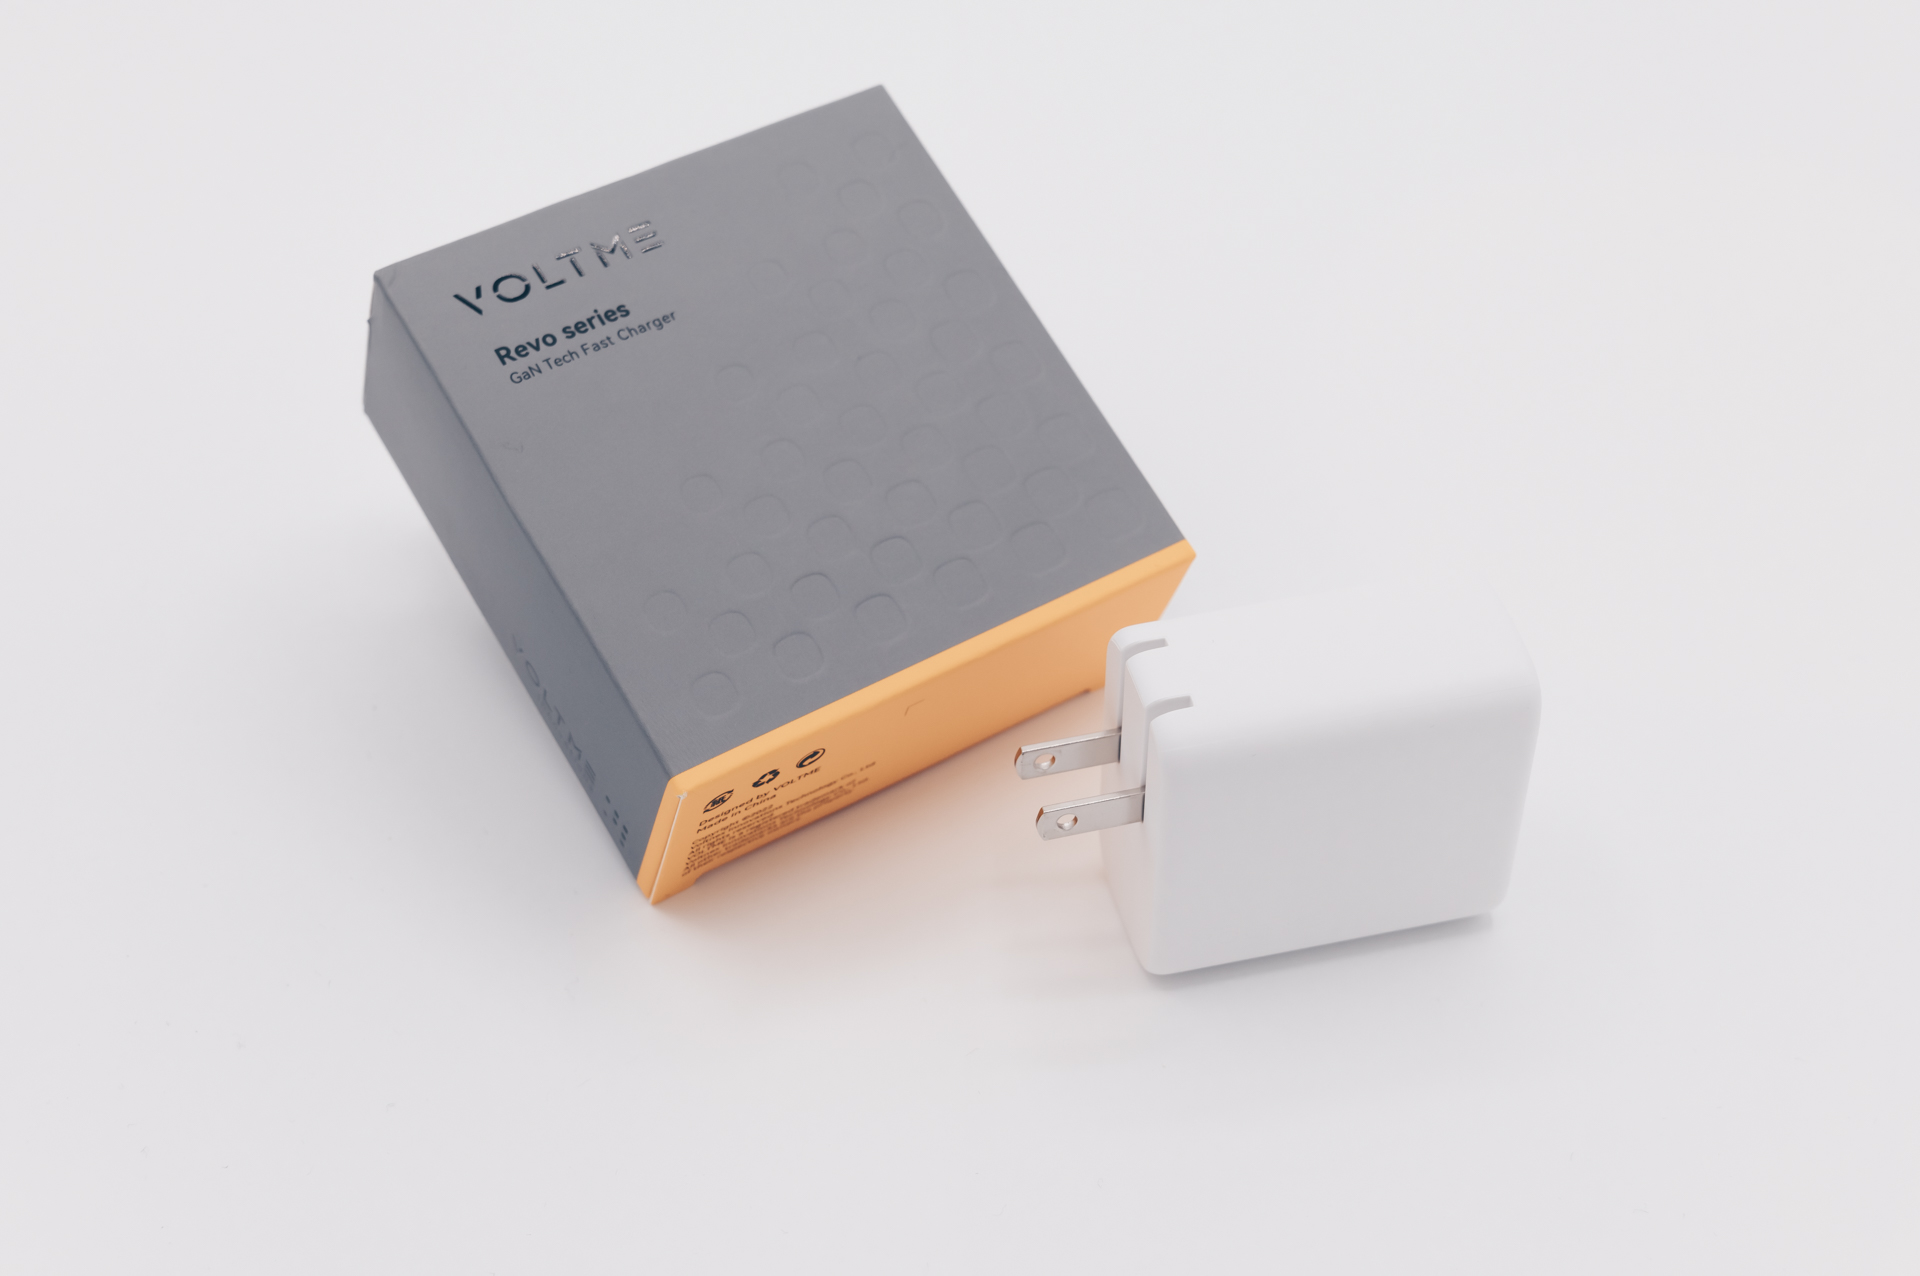 VOLTME Revo 65W レビュー／USB-C×2、USB-A×1の計3ポートを搭載した、使いやすい構成の小型USB充電器